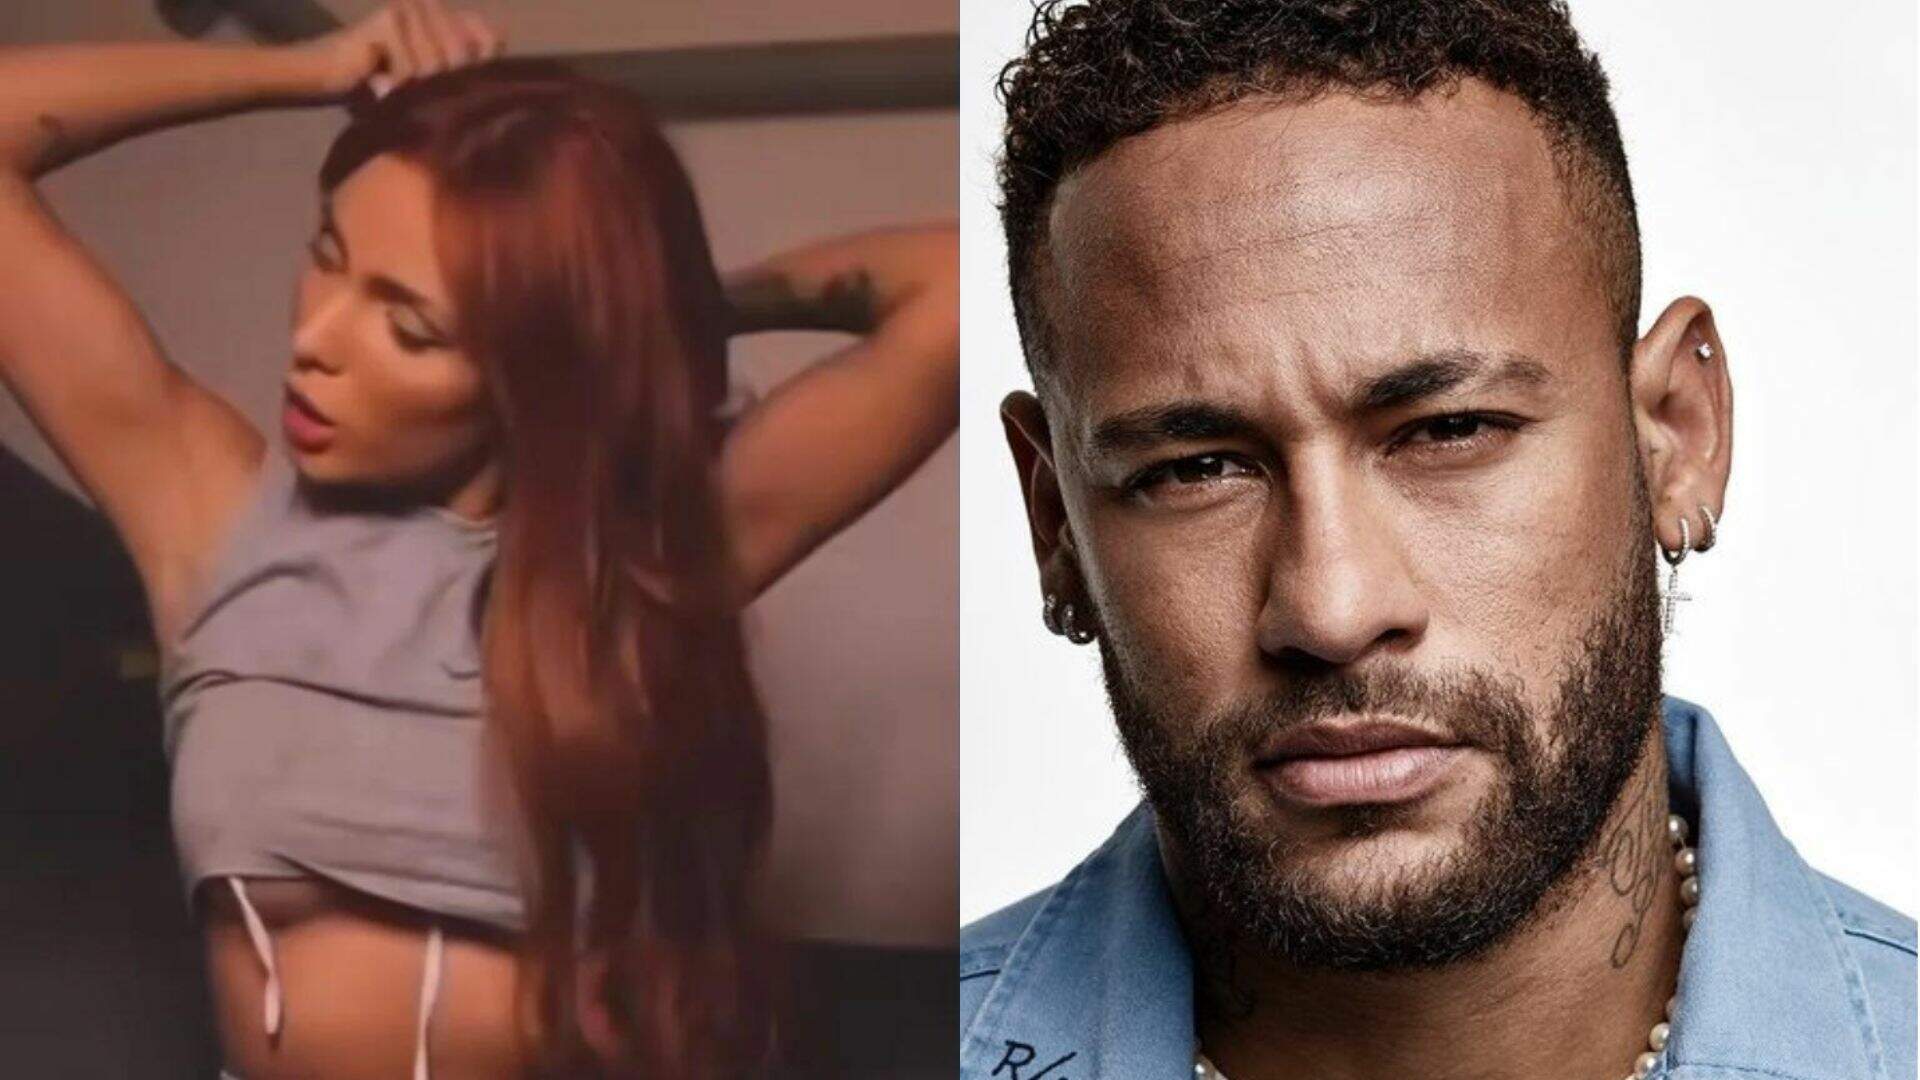 Ex-amante de Neymar entra na plataforma de conteúdo adulto e choca ao usar descrição inédita - Metropolitana FM